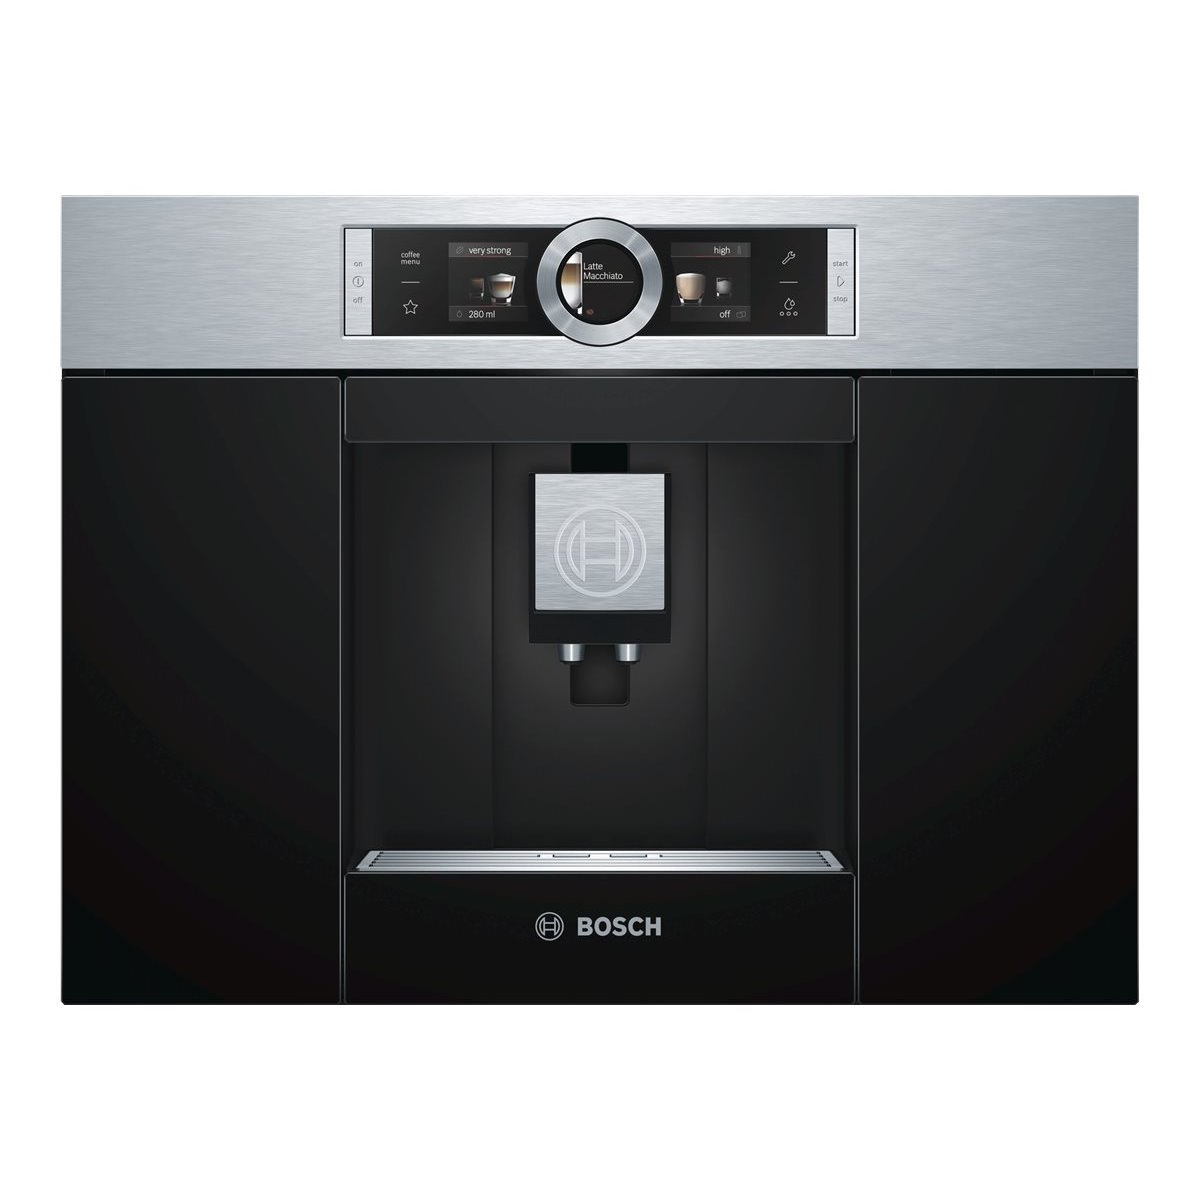 Bosch CTL636ES1 - Espresso machine - 2.4 L - Coffee beans,Ground coffee - Built-in grinder - 1600 W - Black,Stainless steel